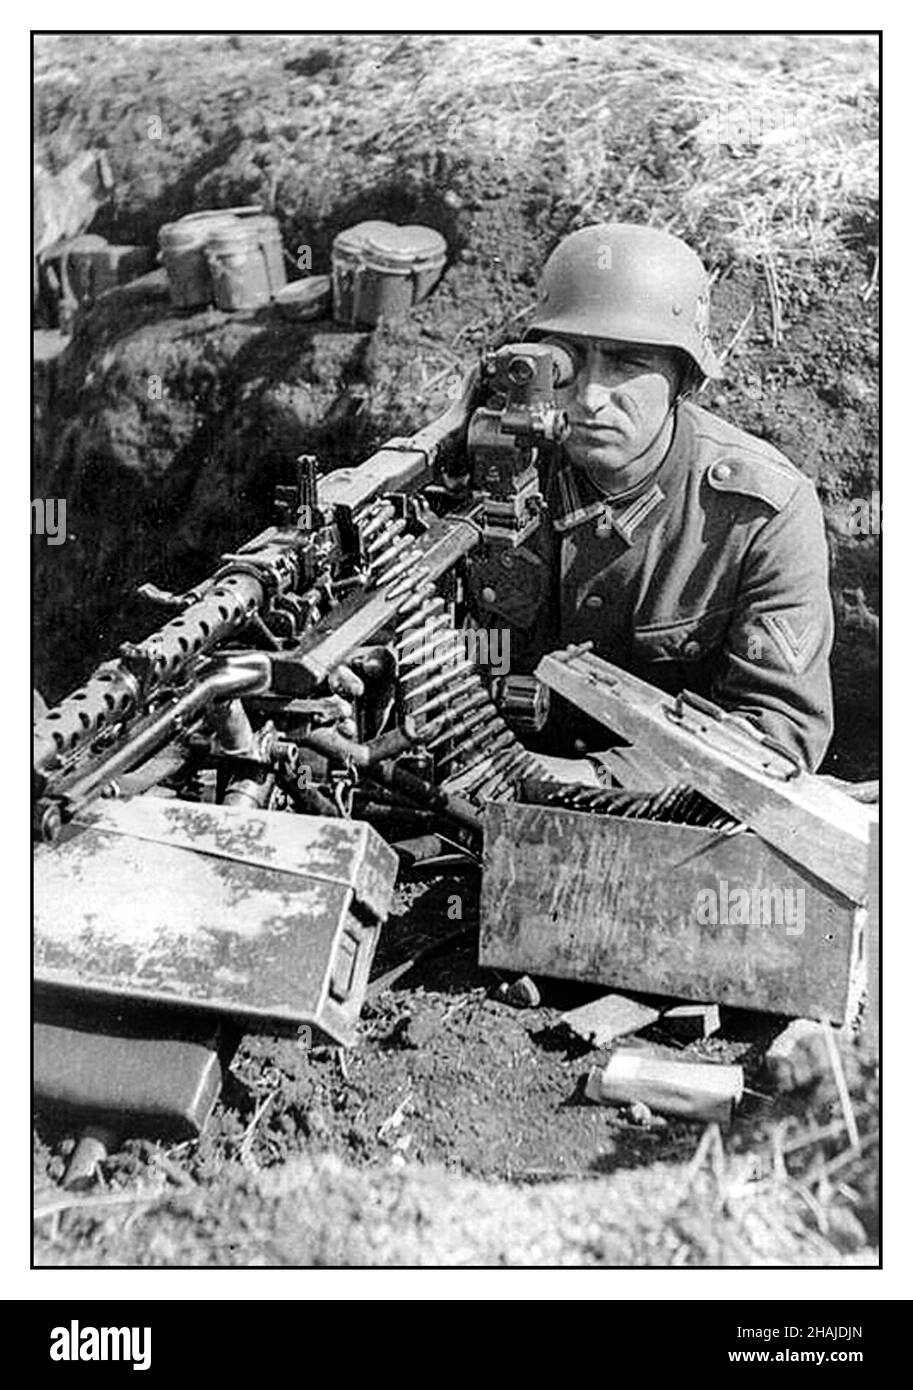 Nazisti MG-42 Machine Gun WW2 Propaganda immagine Wehrmacht esercito nazista soldato in trench dugout con MG-42 Machine Gun con vista ottica, munizioni scatole vicino a mano Foto Stock